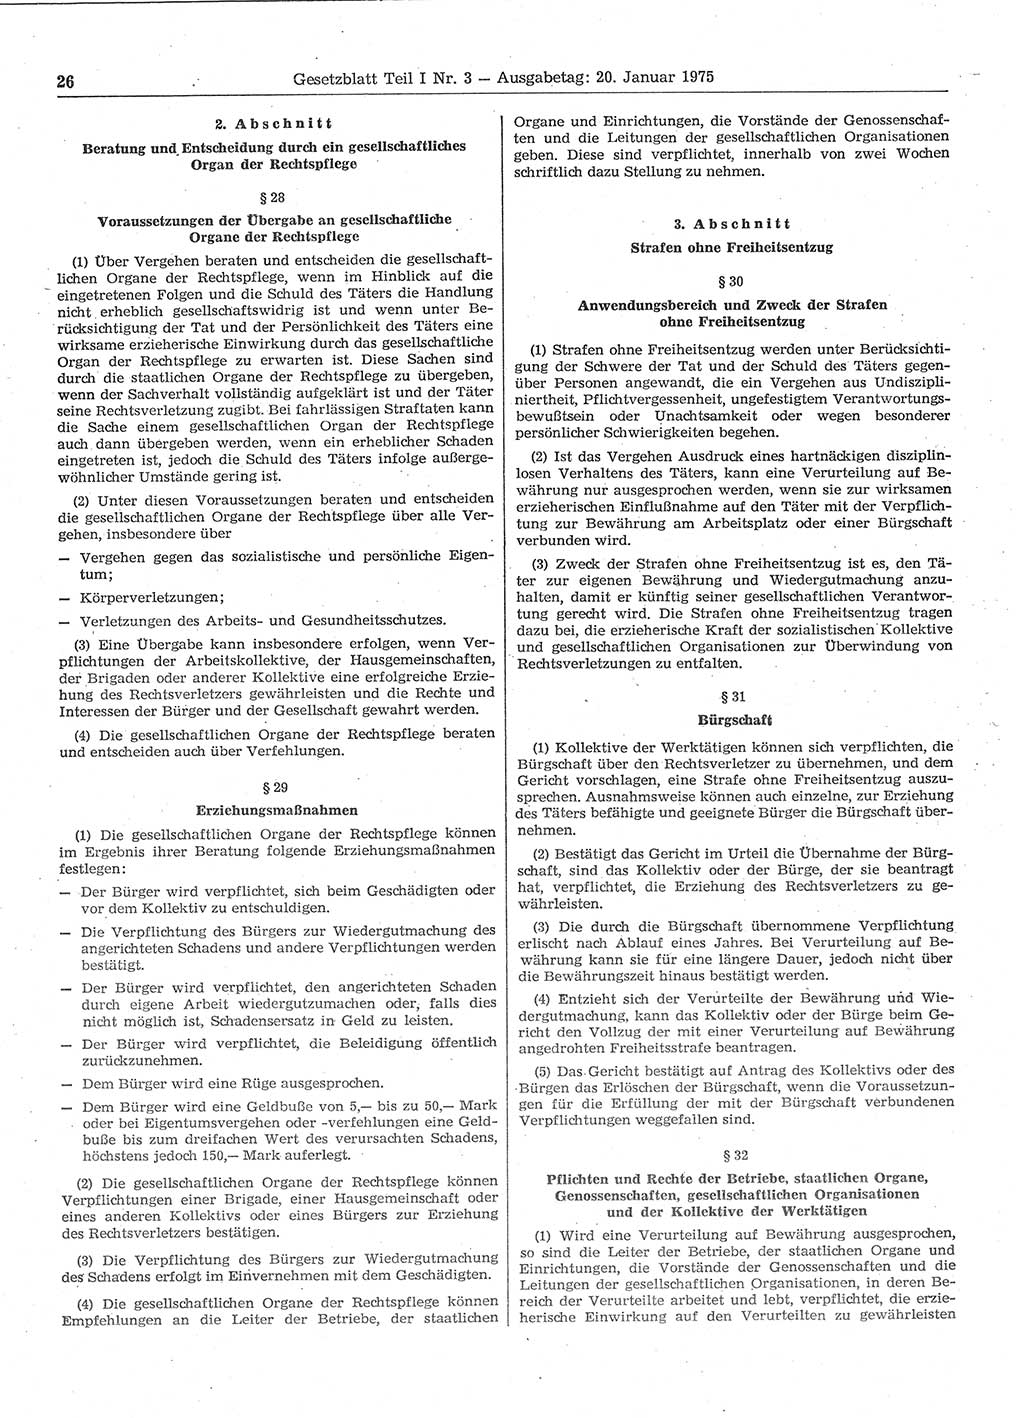 Gesetzblatt (GBl.) der Deutschen Demokratischen Republik (DDR) Teil Ⅰ 1975, Seite 26 (GBl. DDR Ⅰ 1975, S. 26)